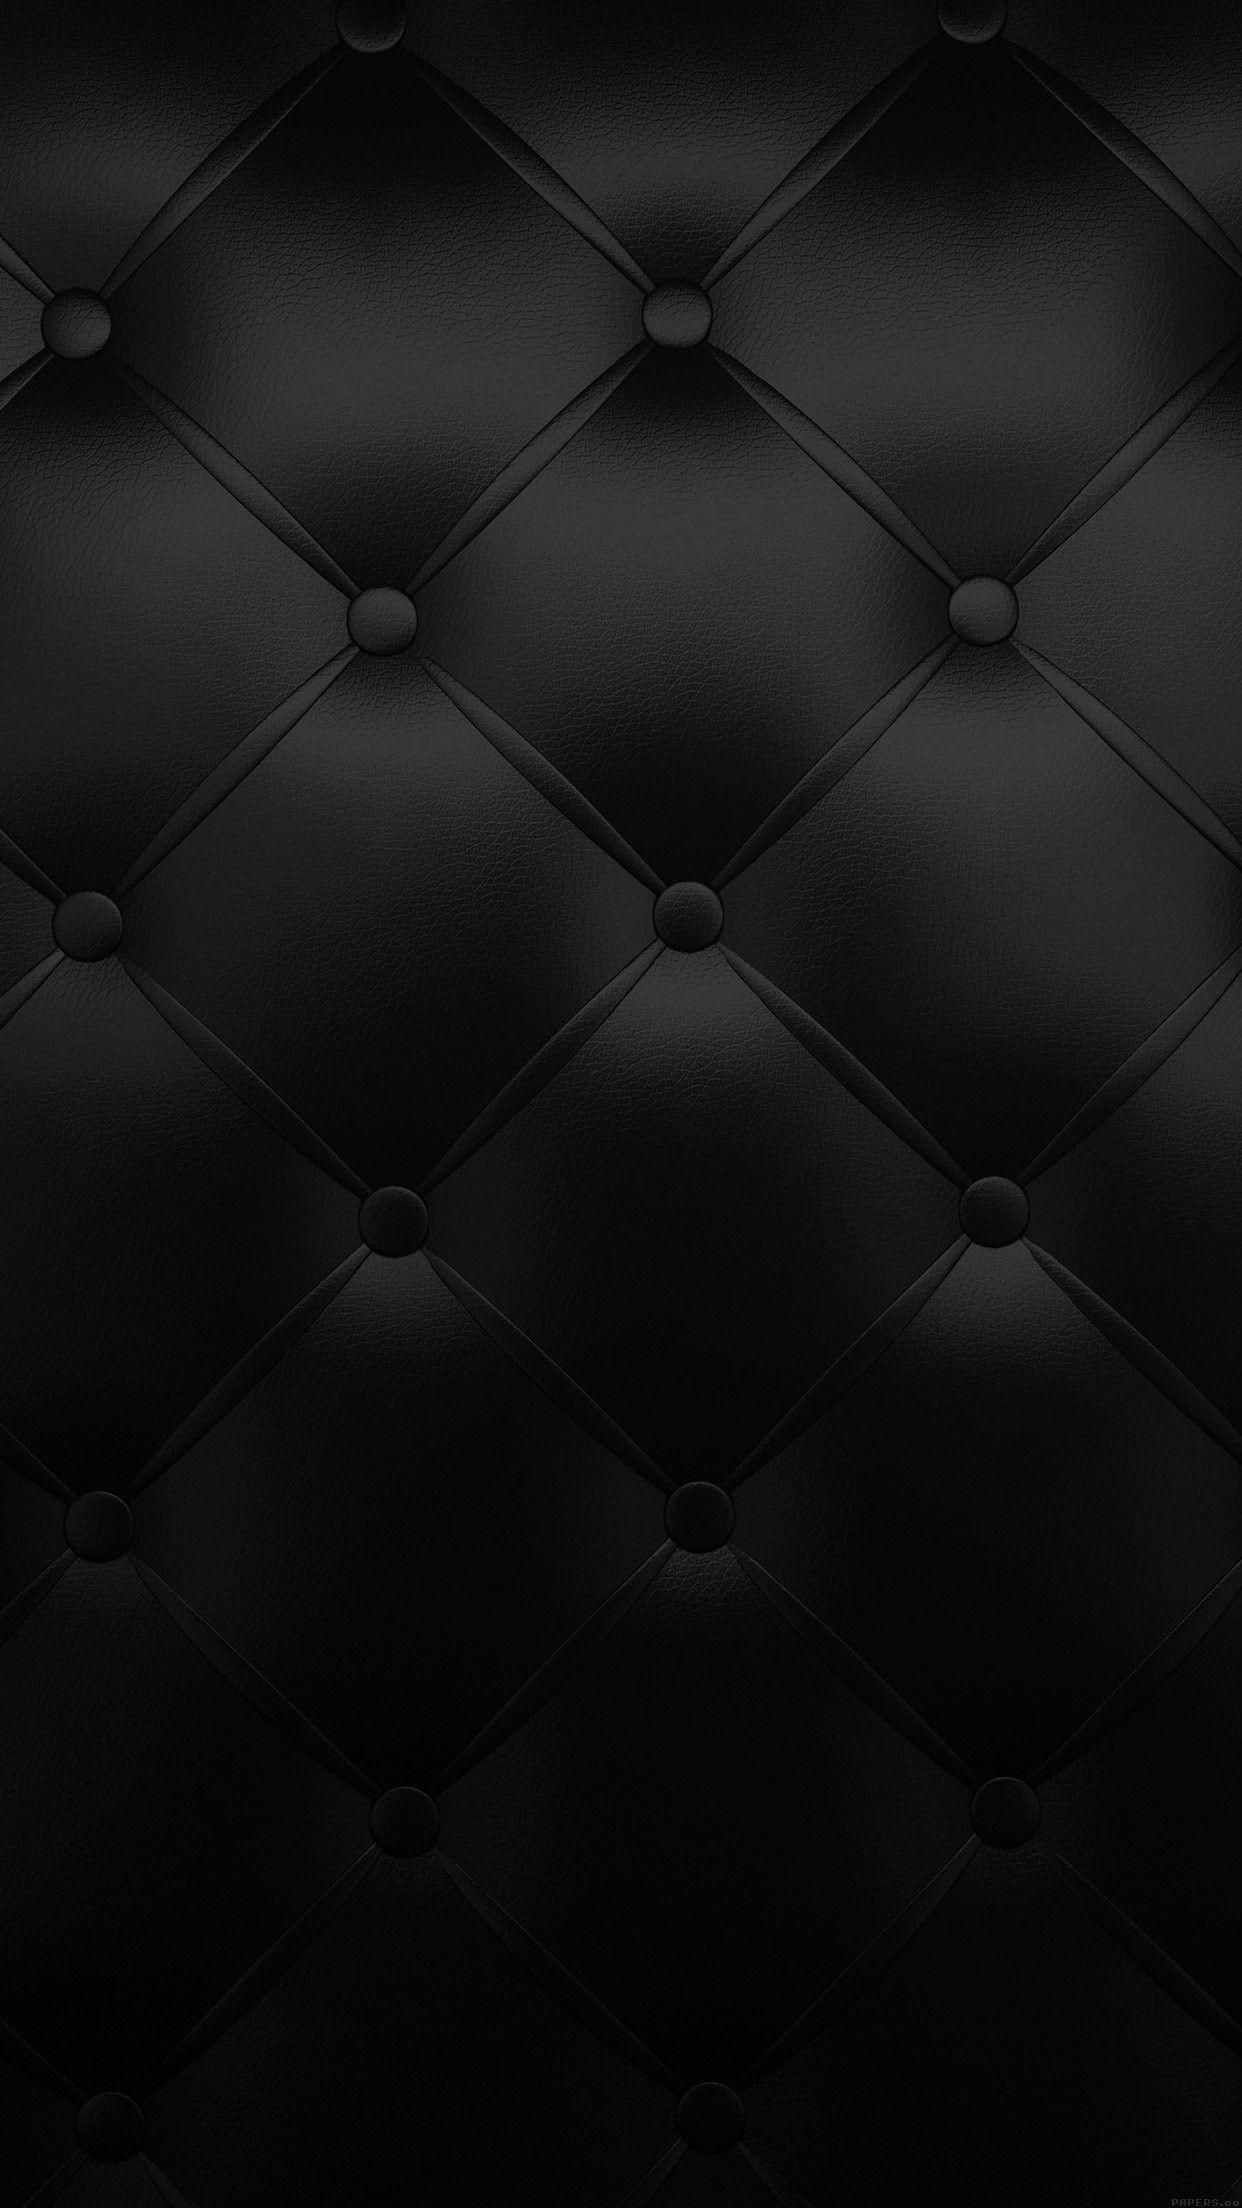 Dark Texture Iphone Wallpapers Top Free Dark Texture Iphone Backgrounds Wallpaperaccess